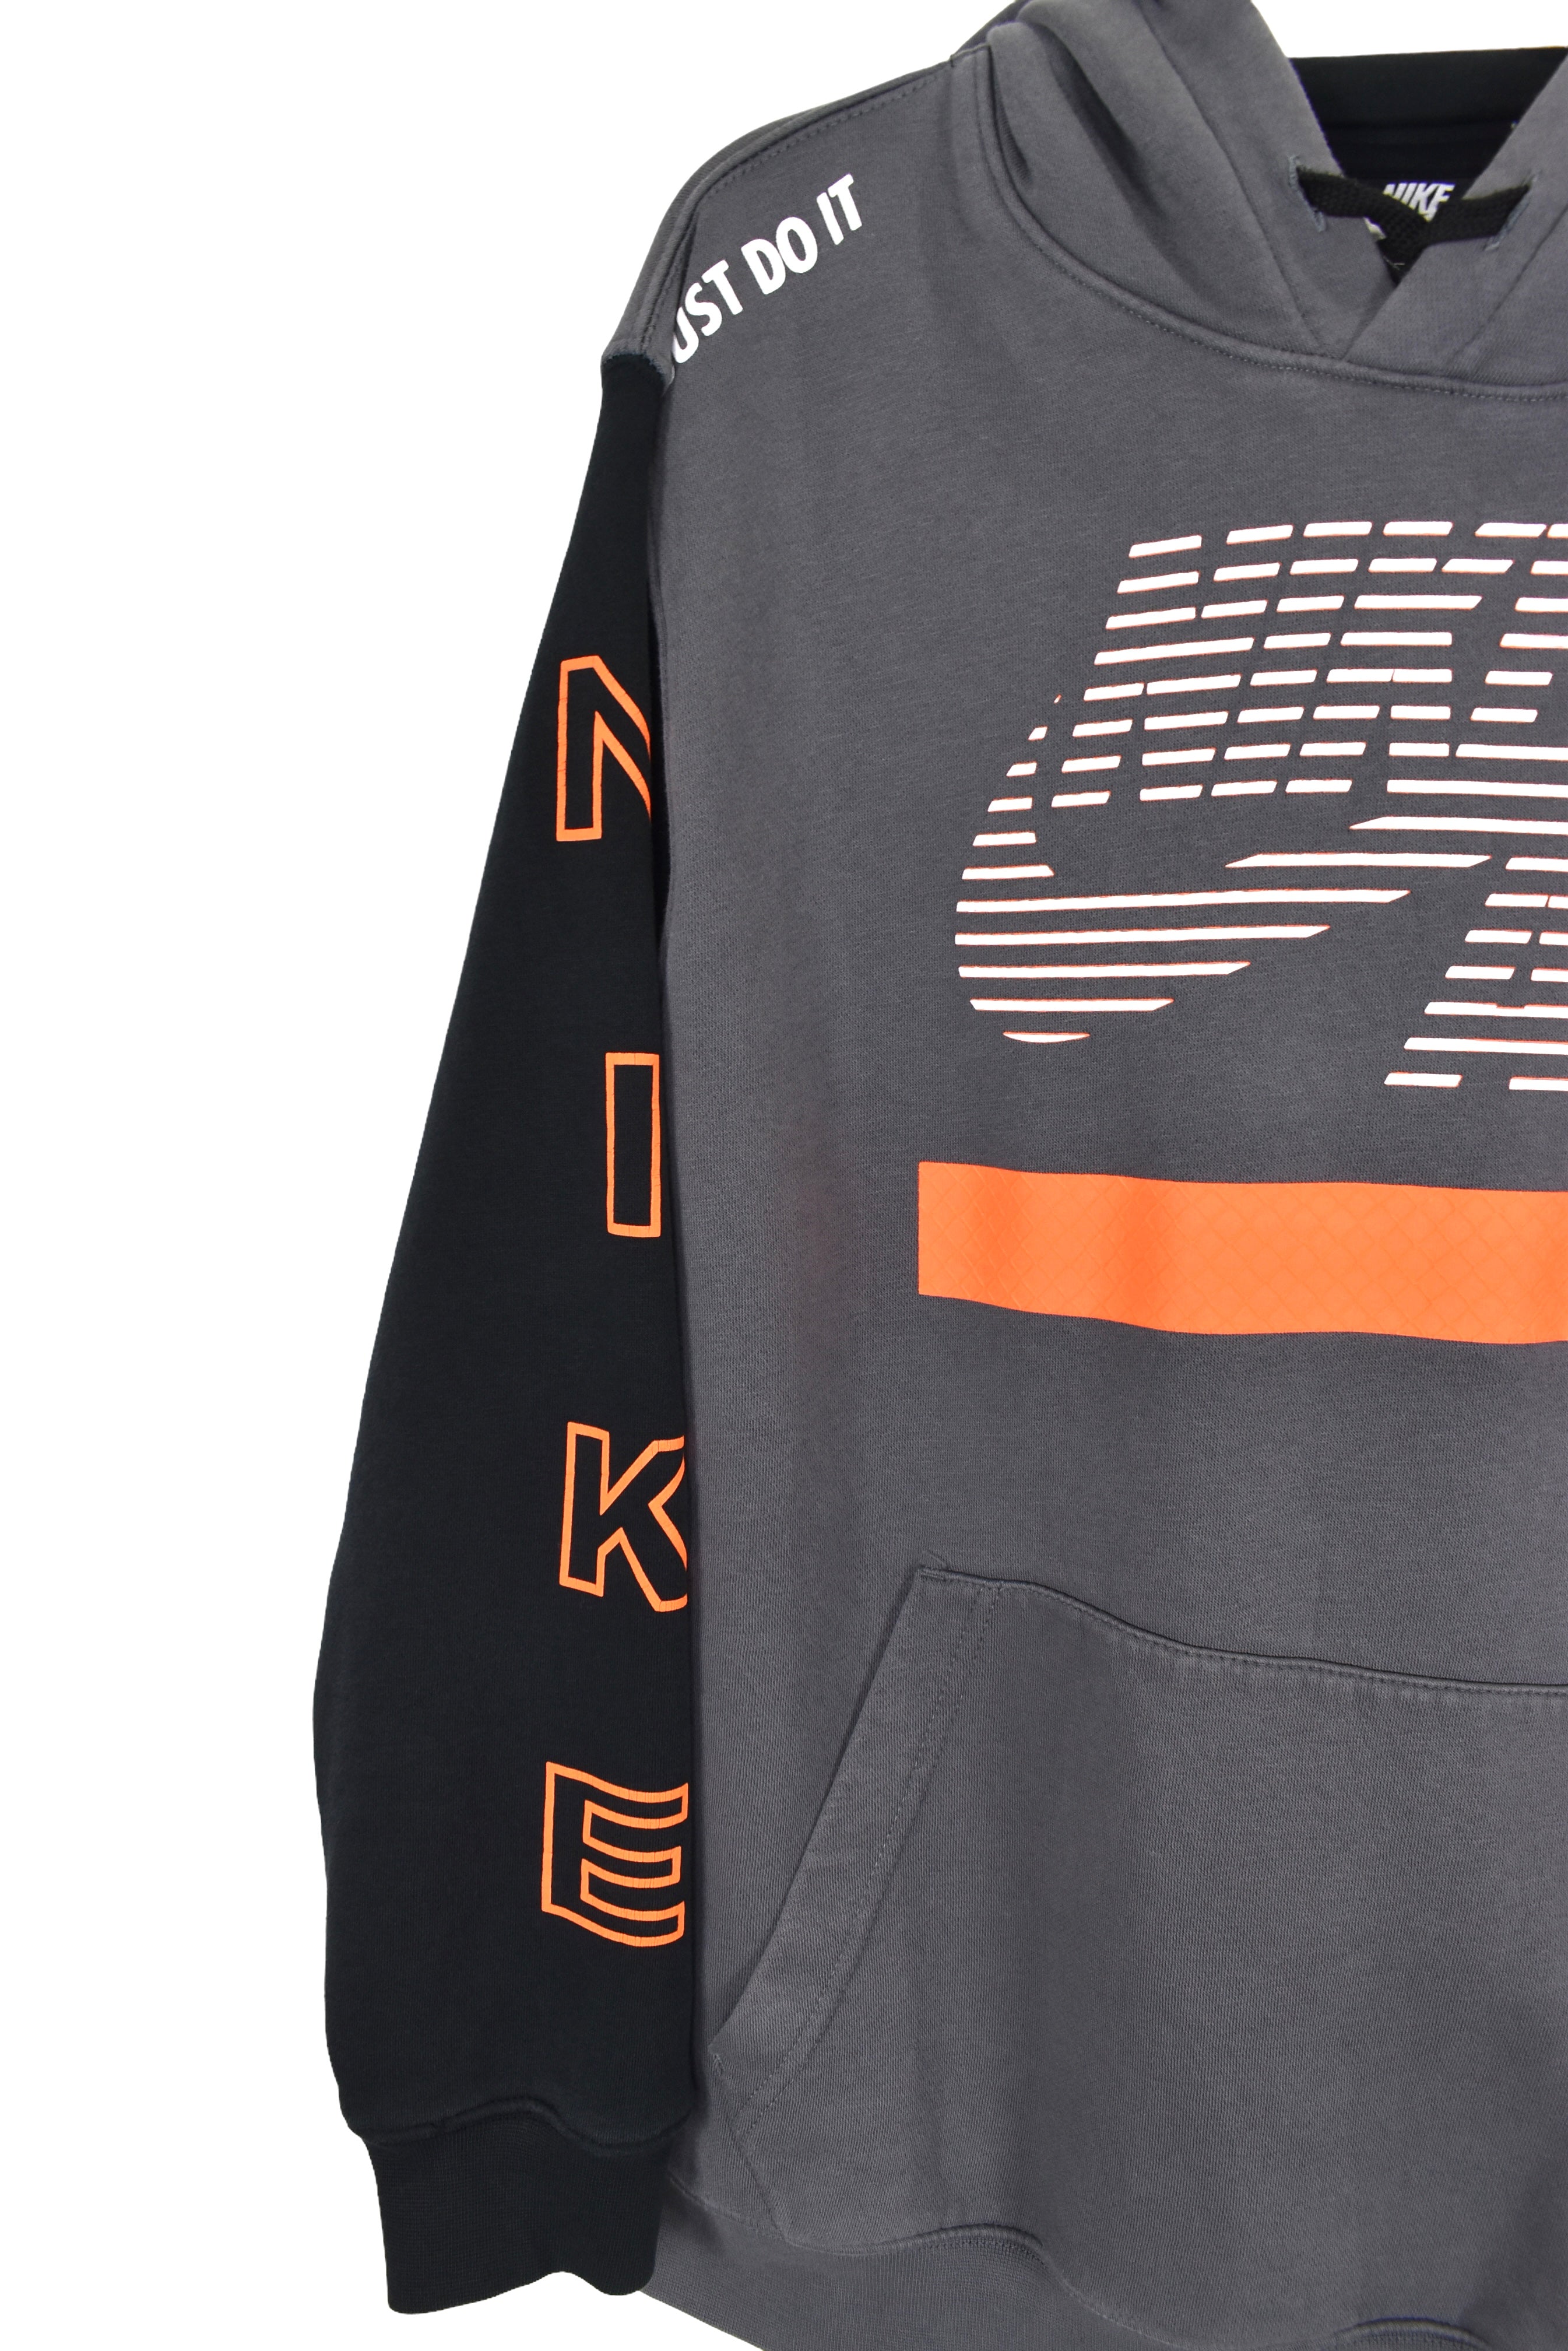 Modern Nike hoodie, grey graphic sweatshirt - Large